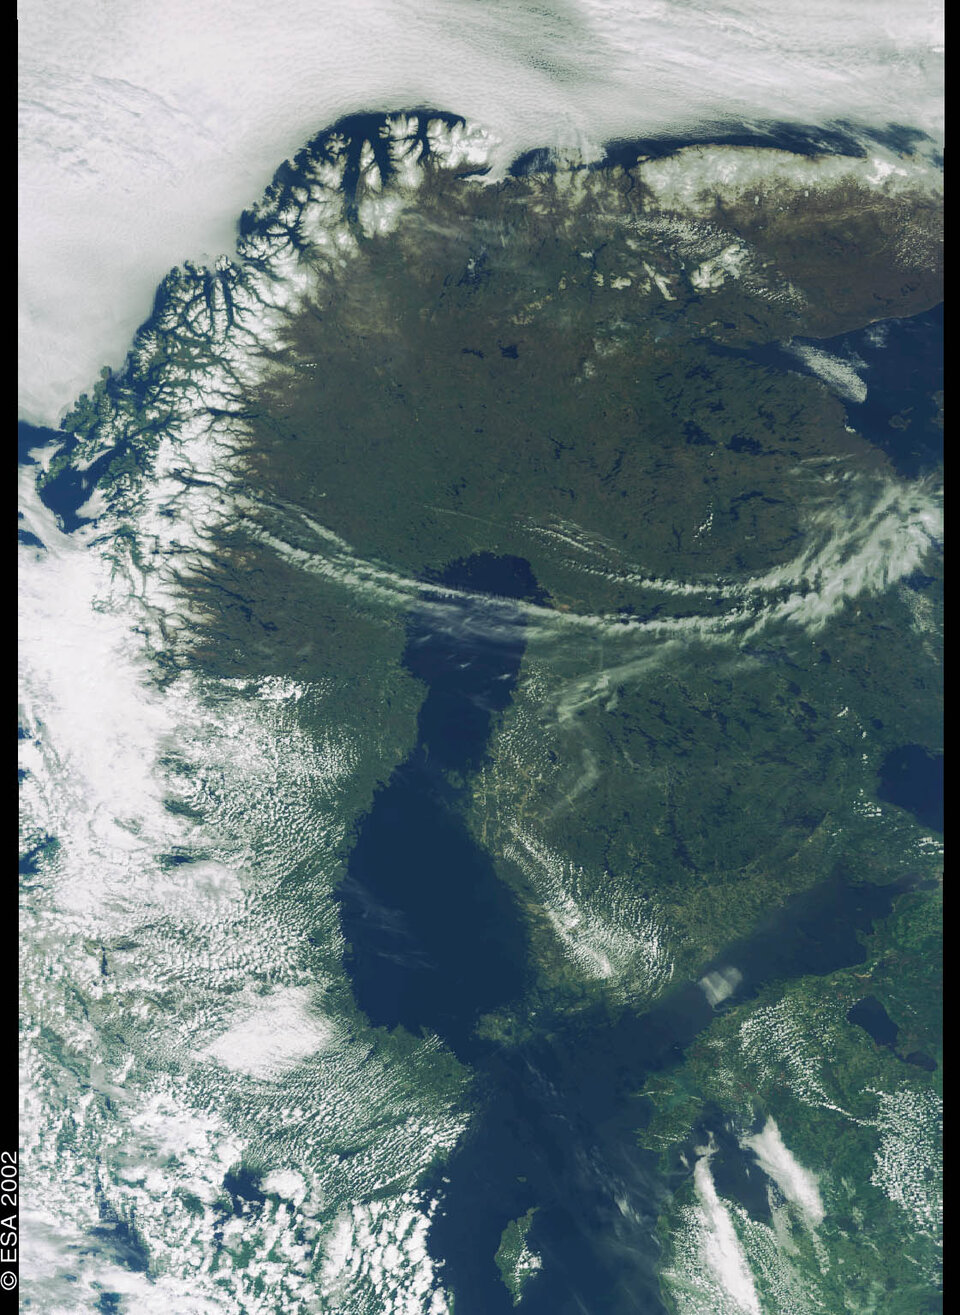 Suomi avaruudesta ENVISAT-satelliitin Meris-mittalaitteen näkemänä. Kaukokartoitustiedon laajempi hyödyntäminen on olennainen osa uutta avaruusstrategiaa.